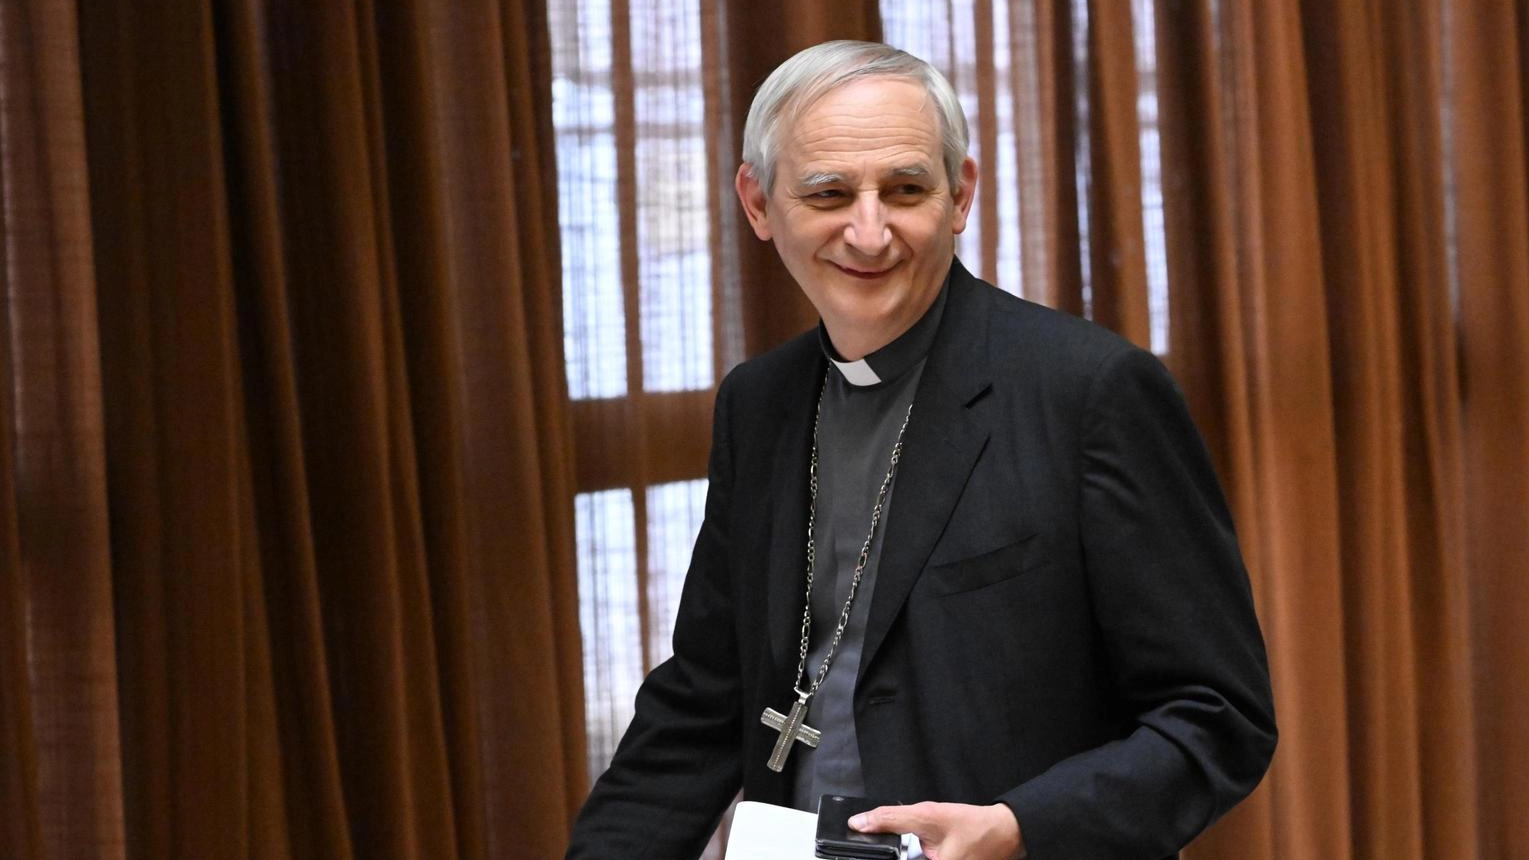 La missione del Vaticano Zuppi vola a Pechino: "Cerco la pace con fiducia"